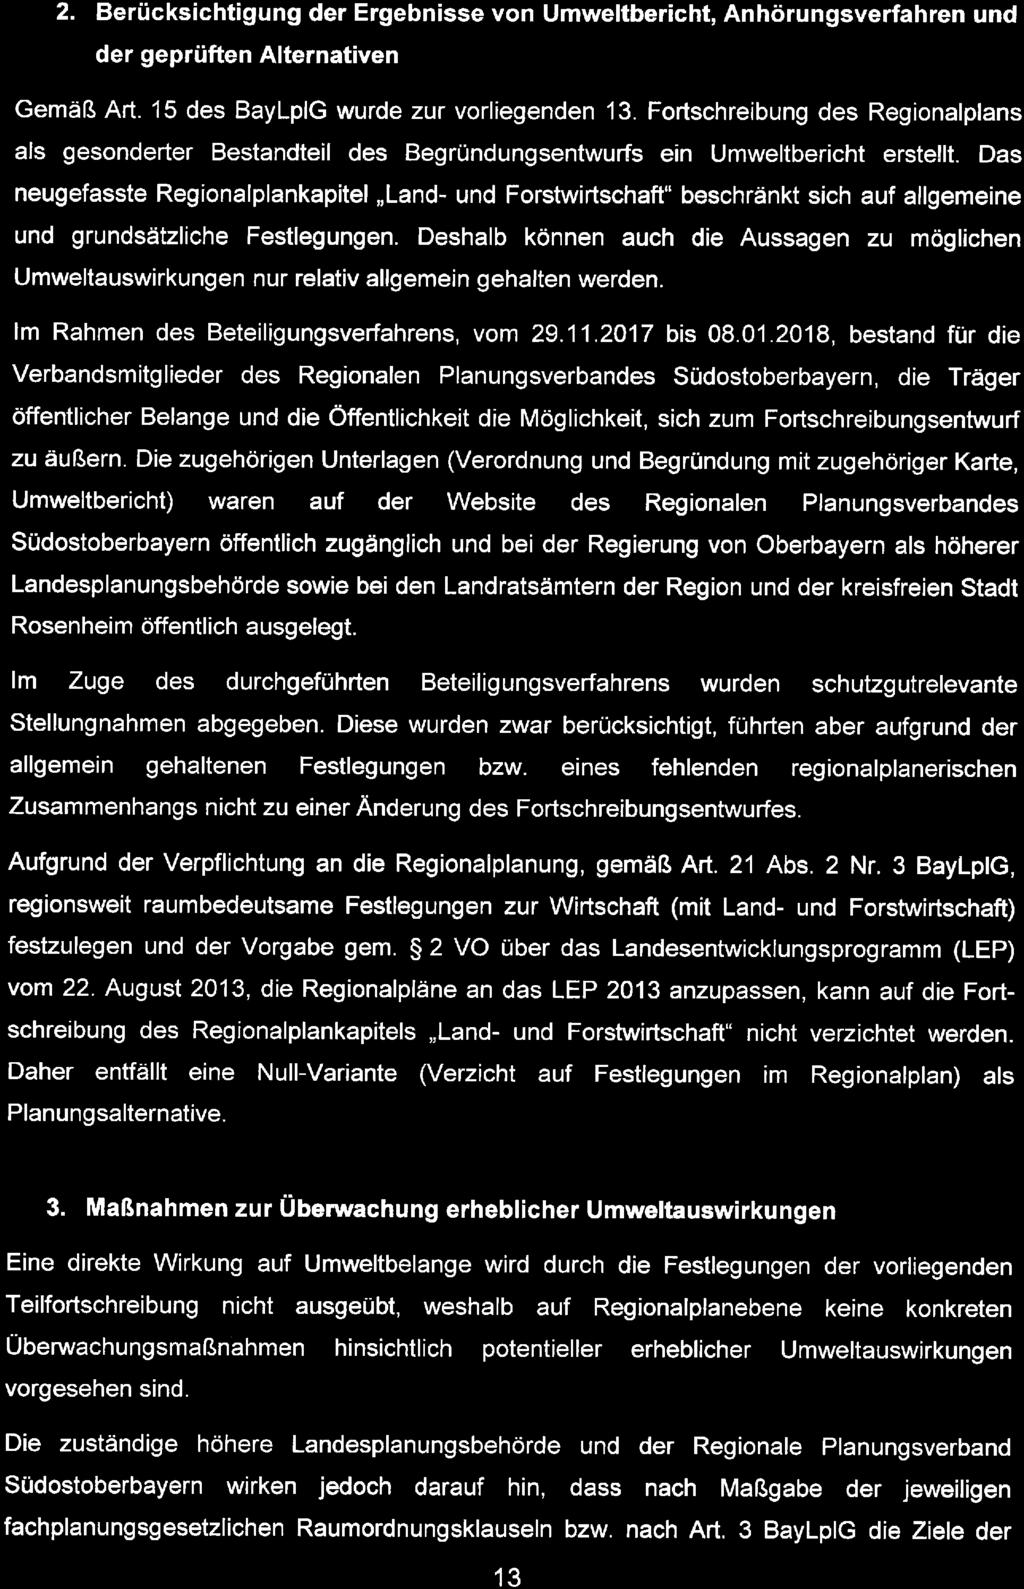 Zusammenfassende Erklärung zur Vierten Verordnung des Regionalplans Südostoberbayern 2. Berücksichtigung der Ergebnisse von Umweltbericht, Anhörungsverfahren und der geprüften Alternativen Gemäß Art.